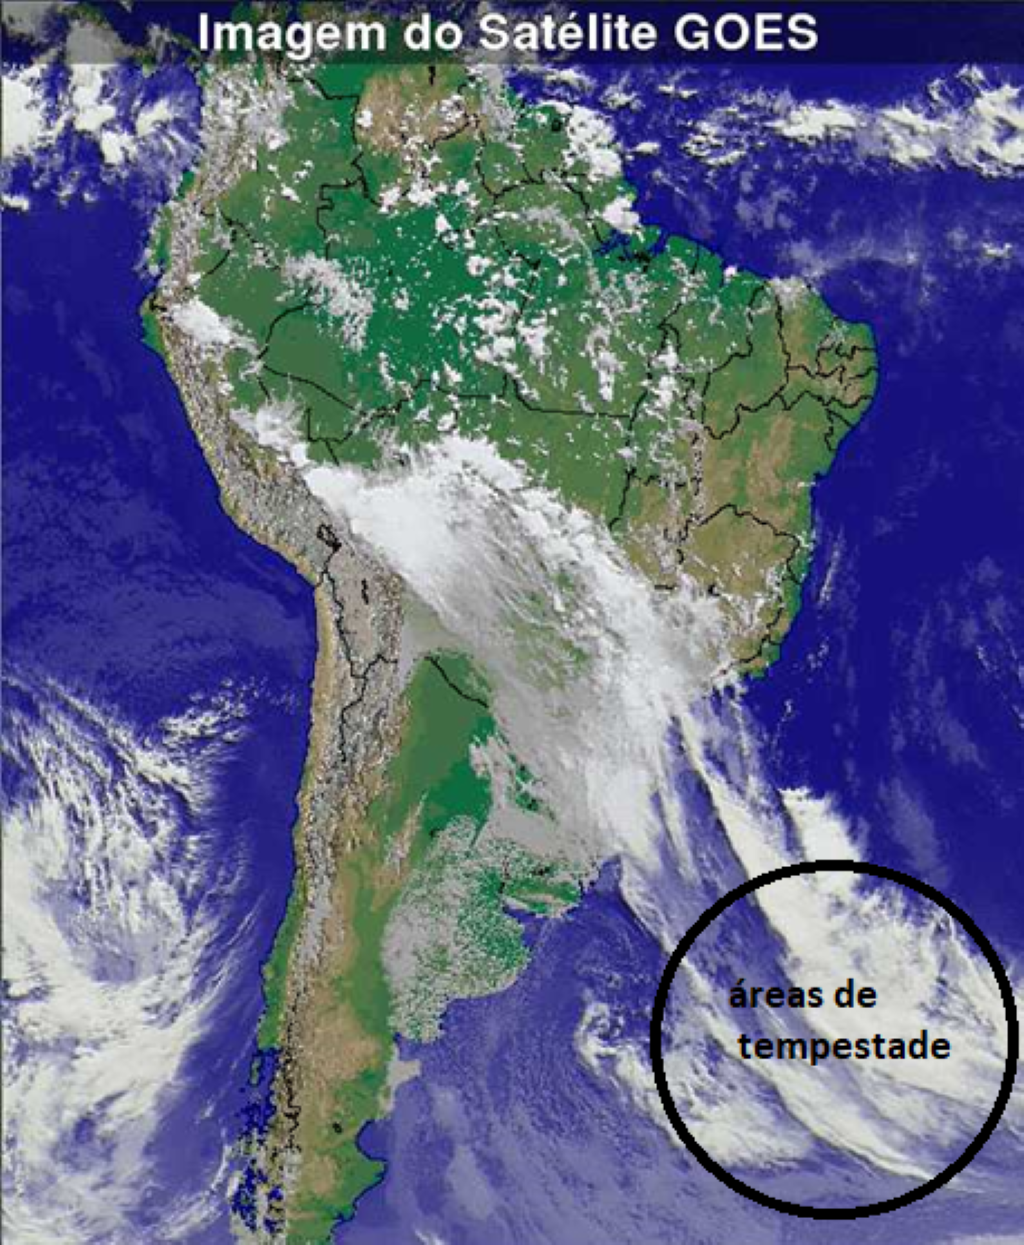 Em destaque, as áreas tempestuosas do Cinturão do Atlântico Sul – região geradora dos swells que atingem a costa brasileira.